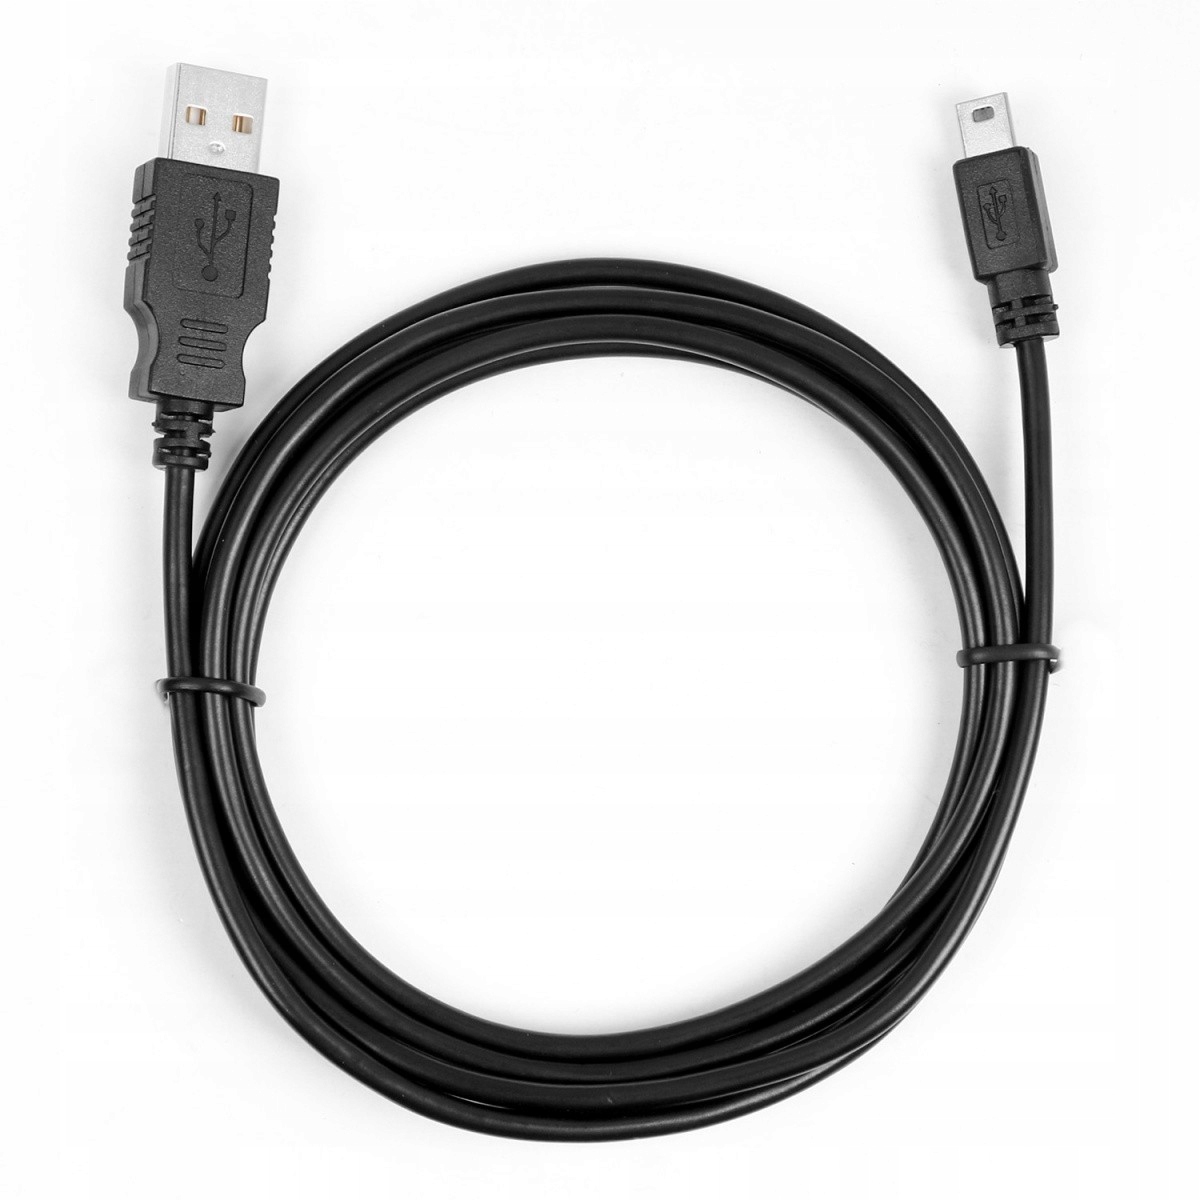 ТБ USB кабель-мини USB 1.8 м. Черный код производителя 5902002071406